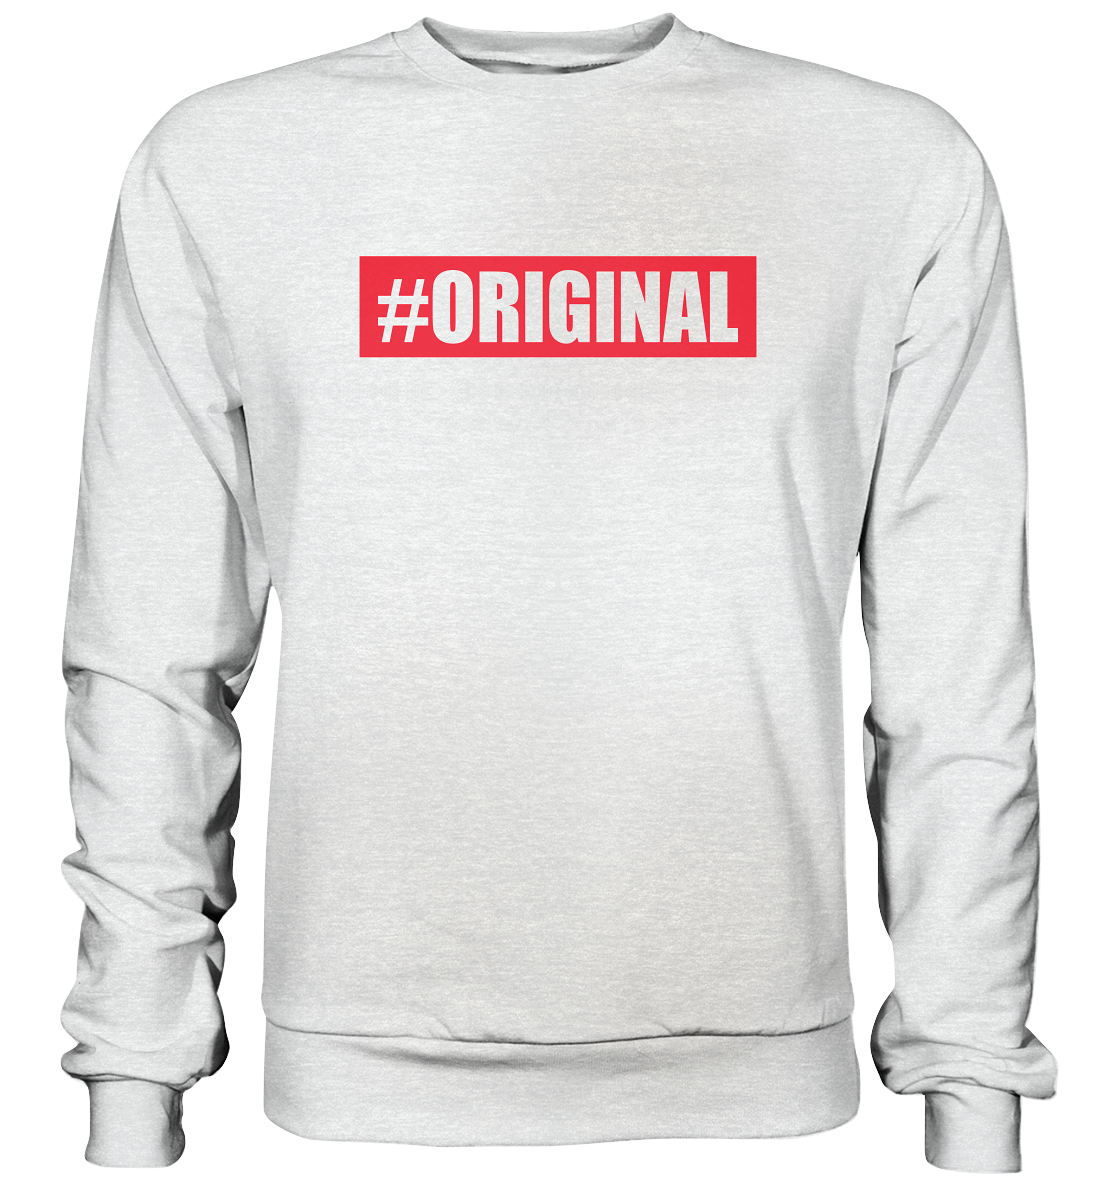 Original - Premium Sweatshirt